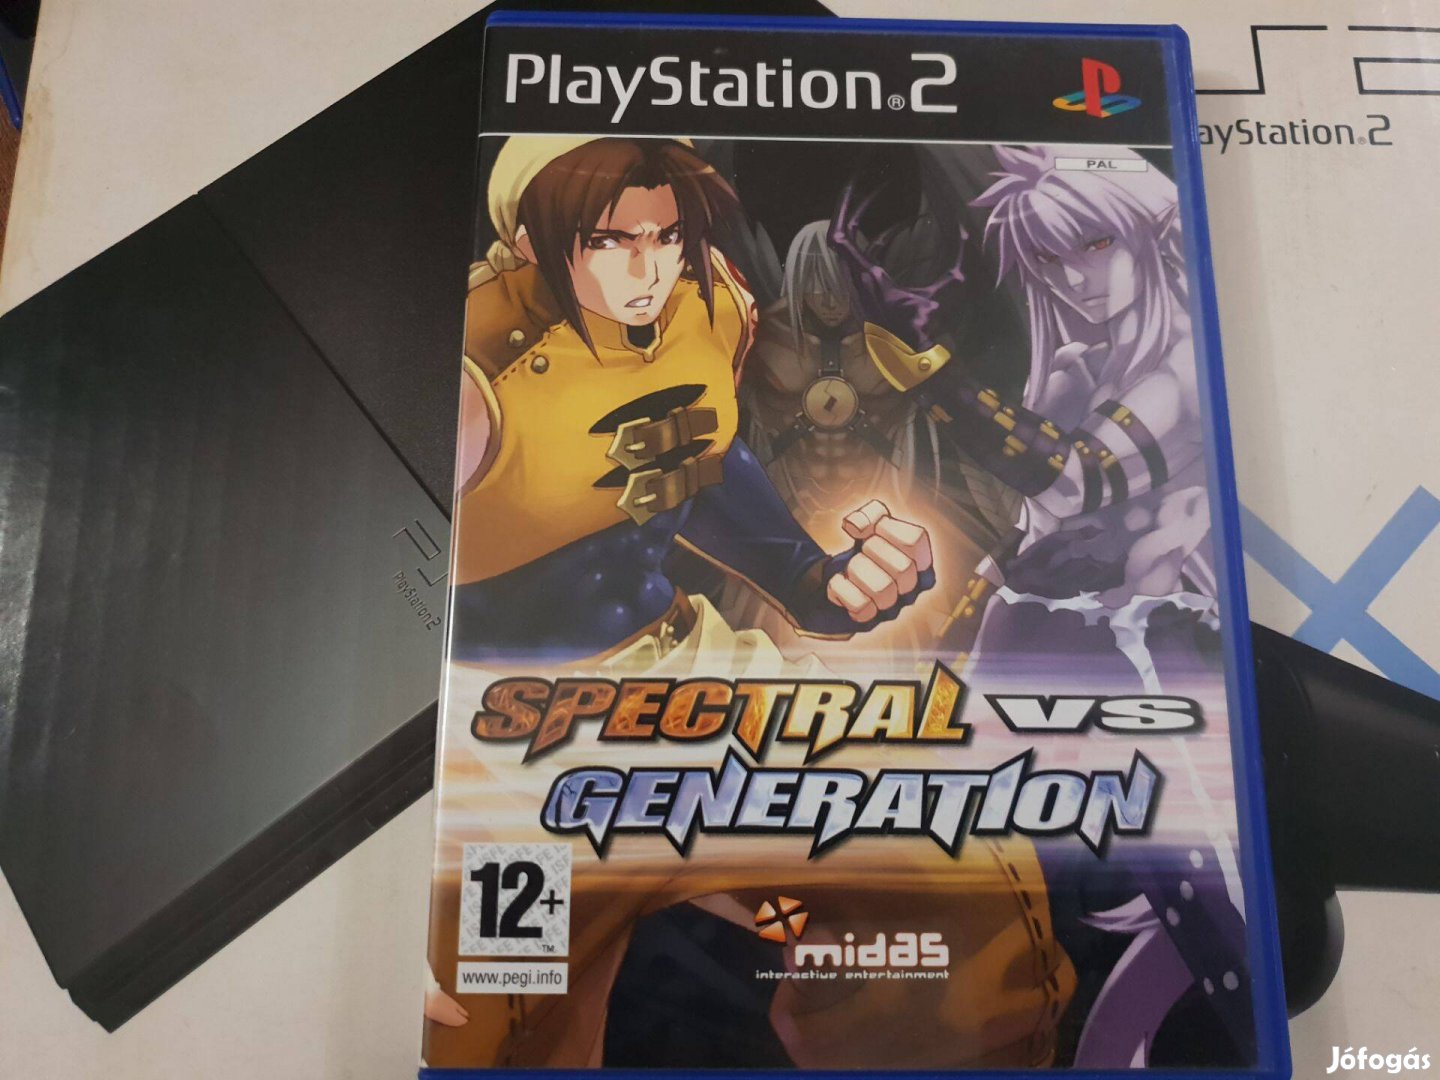 Spectral vs Generation Playstation 2 eredeti lemez eladó